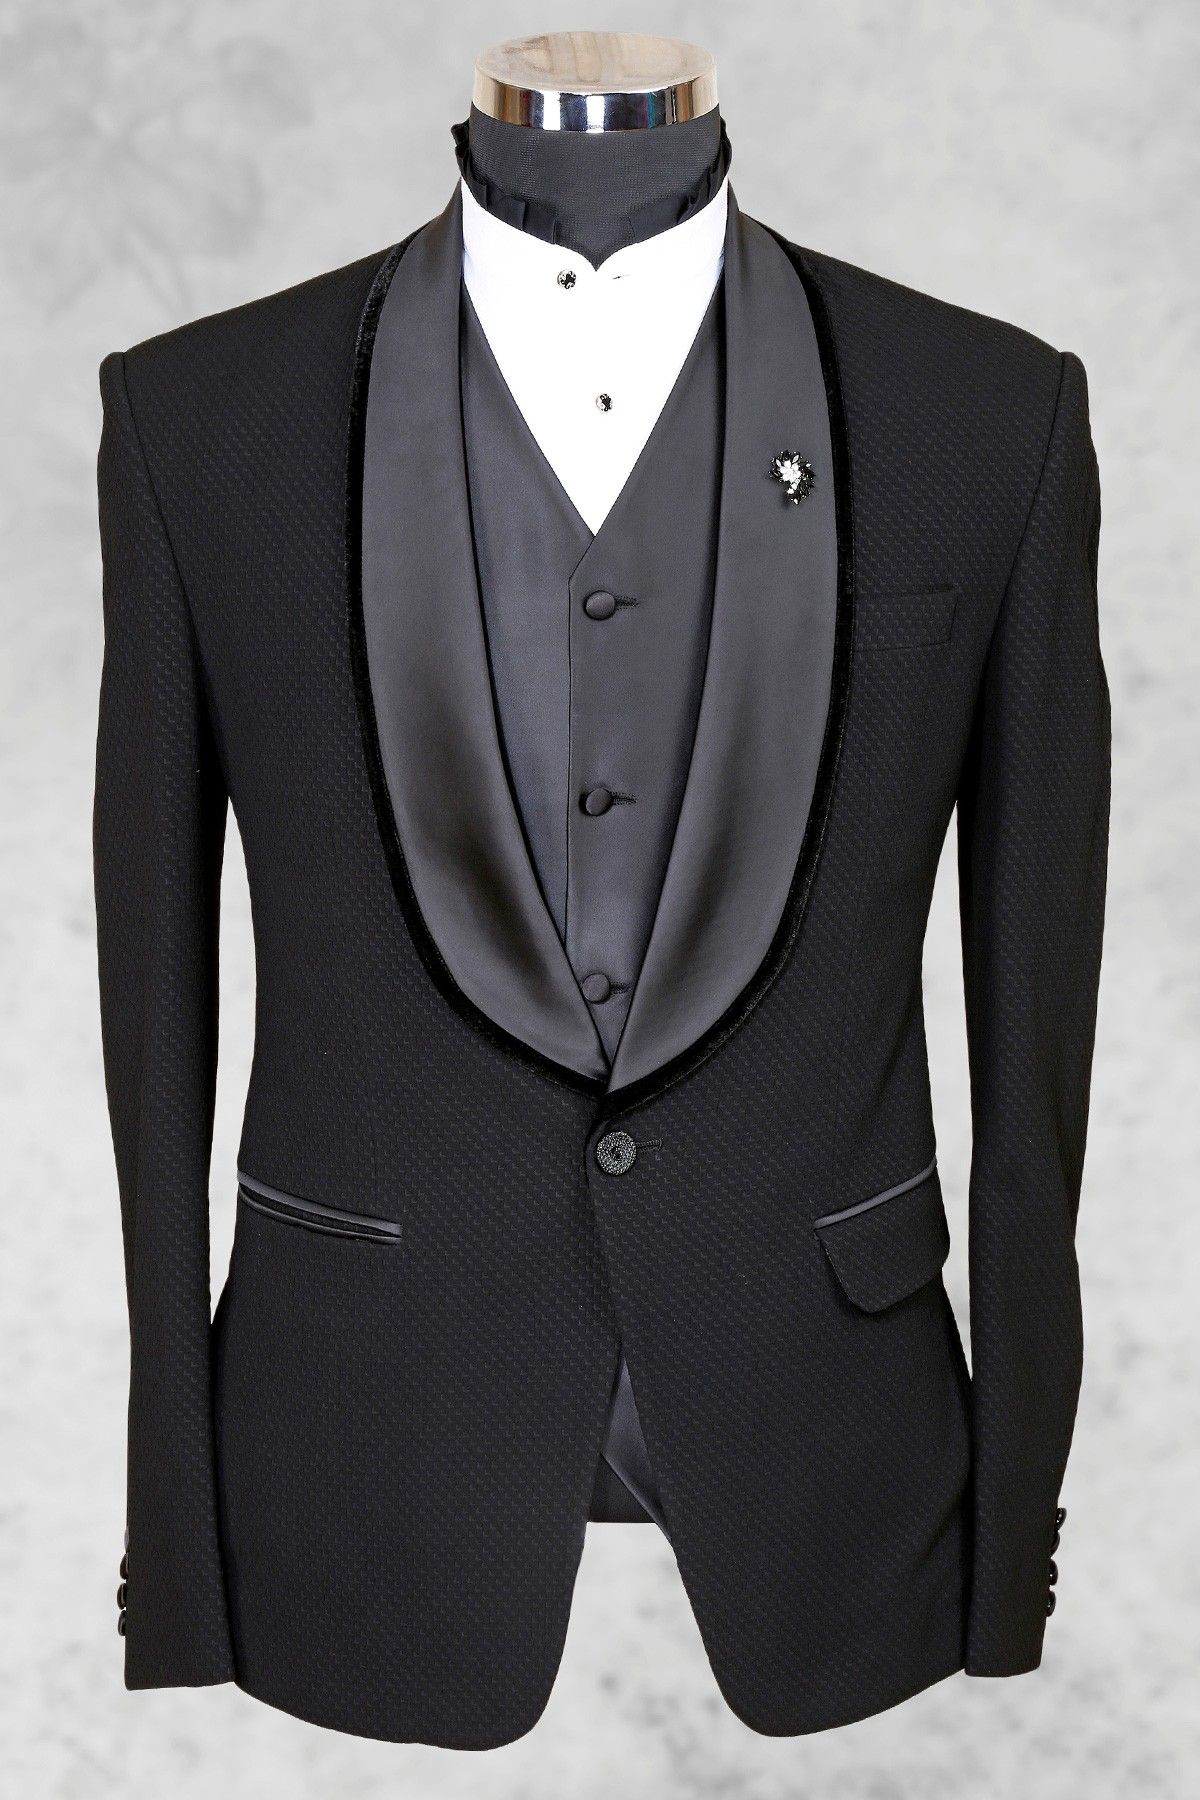 The Dazzle Man Classic Black Tuxedo Three Piece Suit